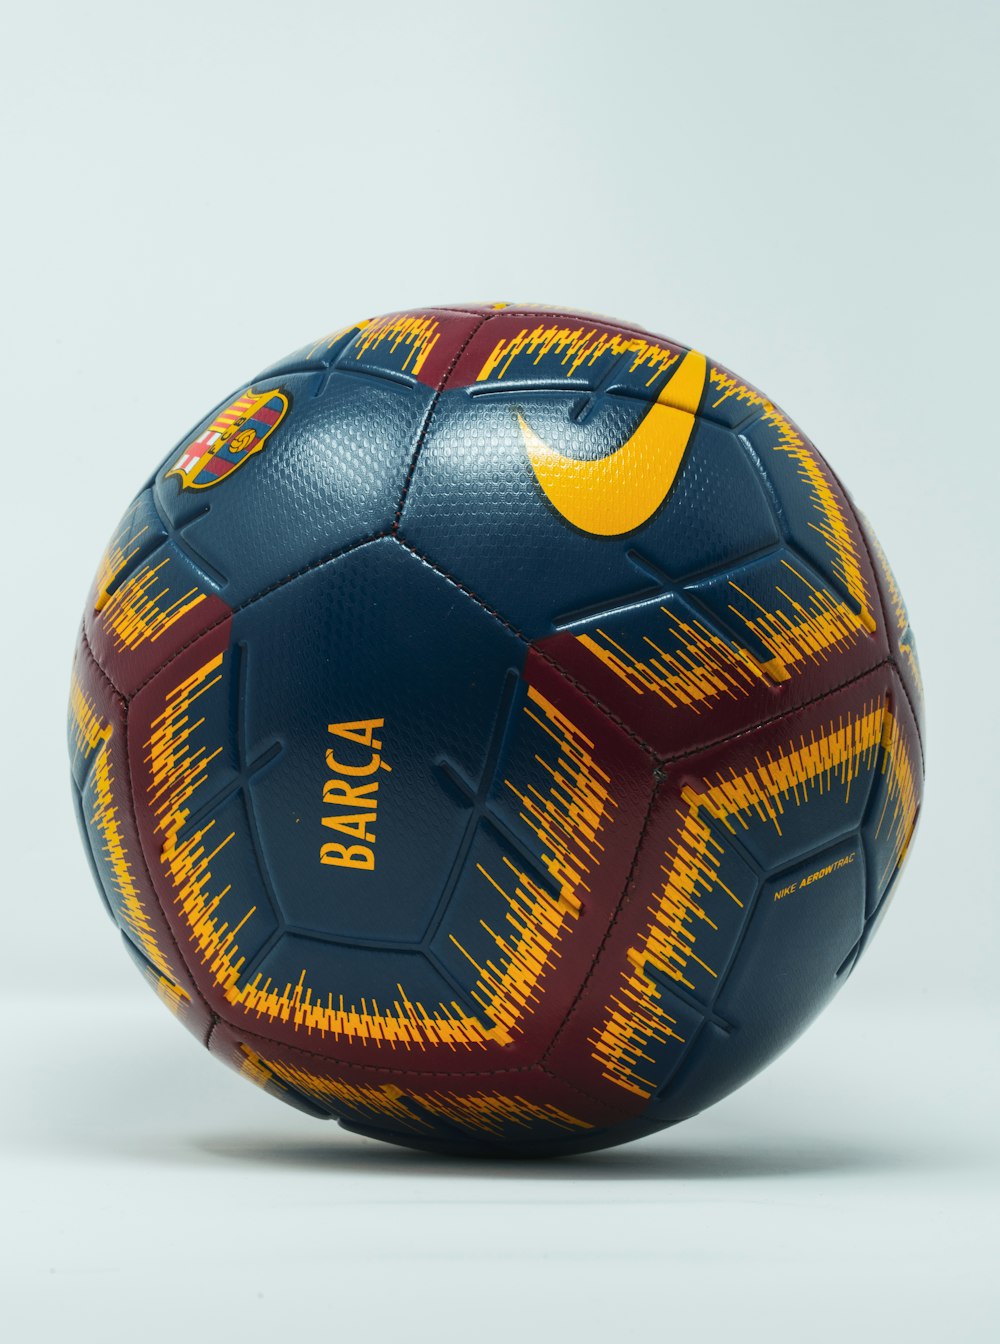 Foto balón de fútbol Nike azul, granate y amarillo – Imagen Pelota gratis  en Unsplash